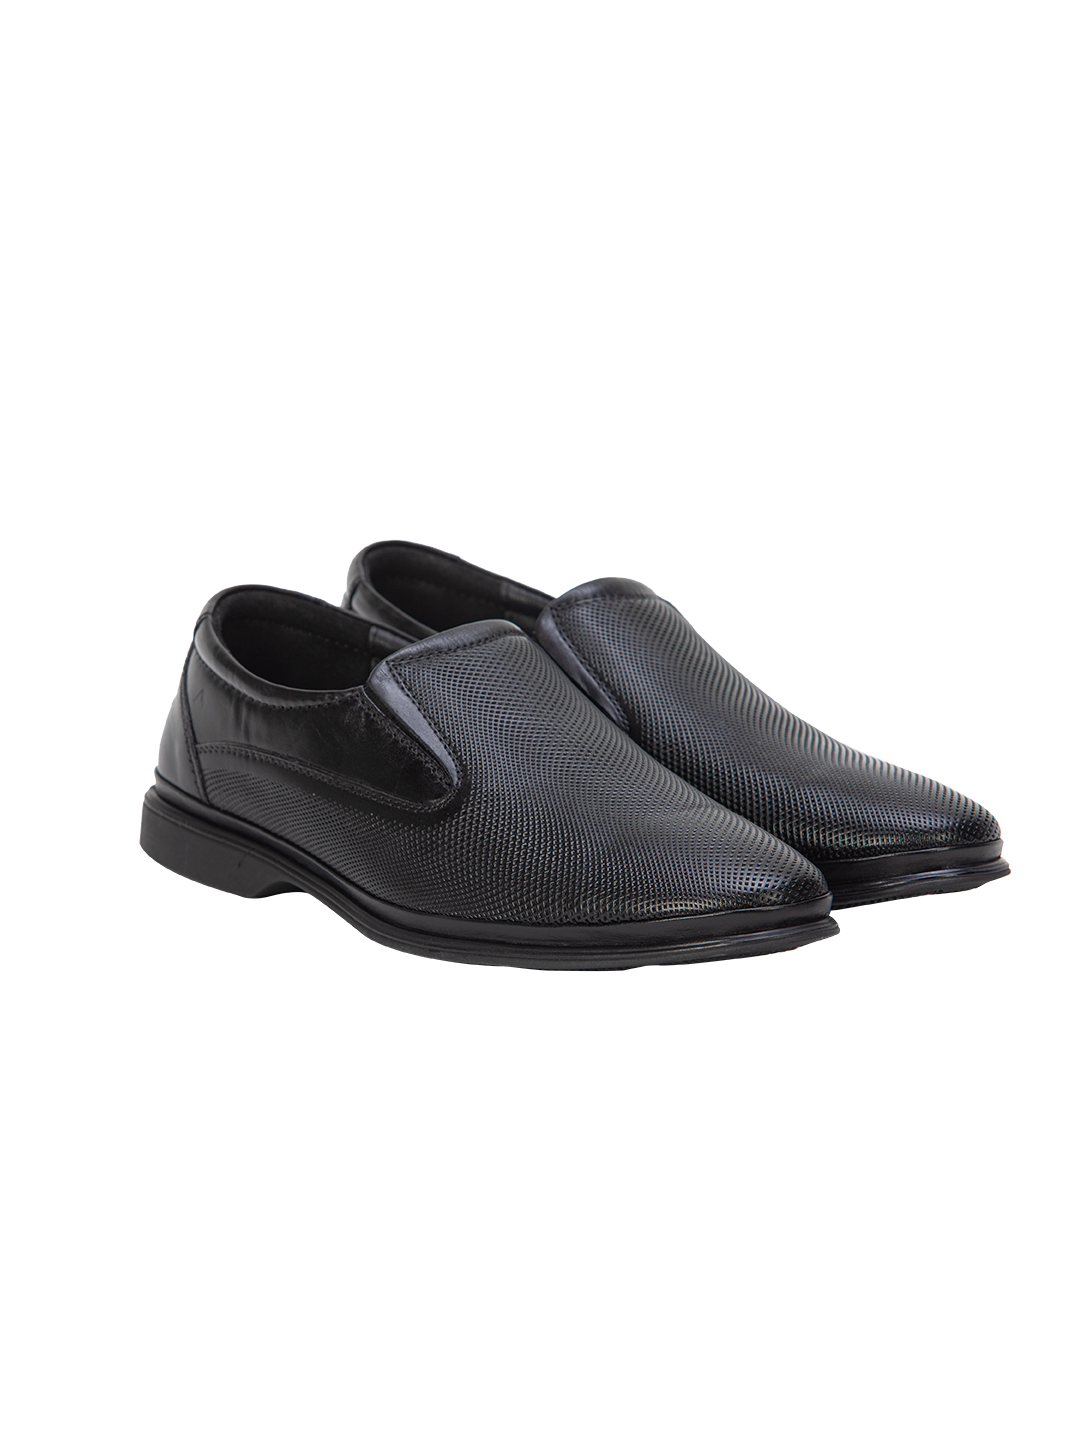 Buy Von Wellx Germany Comfort Mondaine Casual Black Shoes Online in Haora